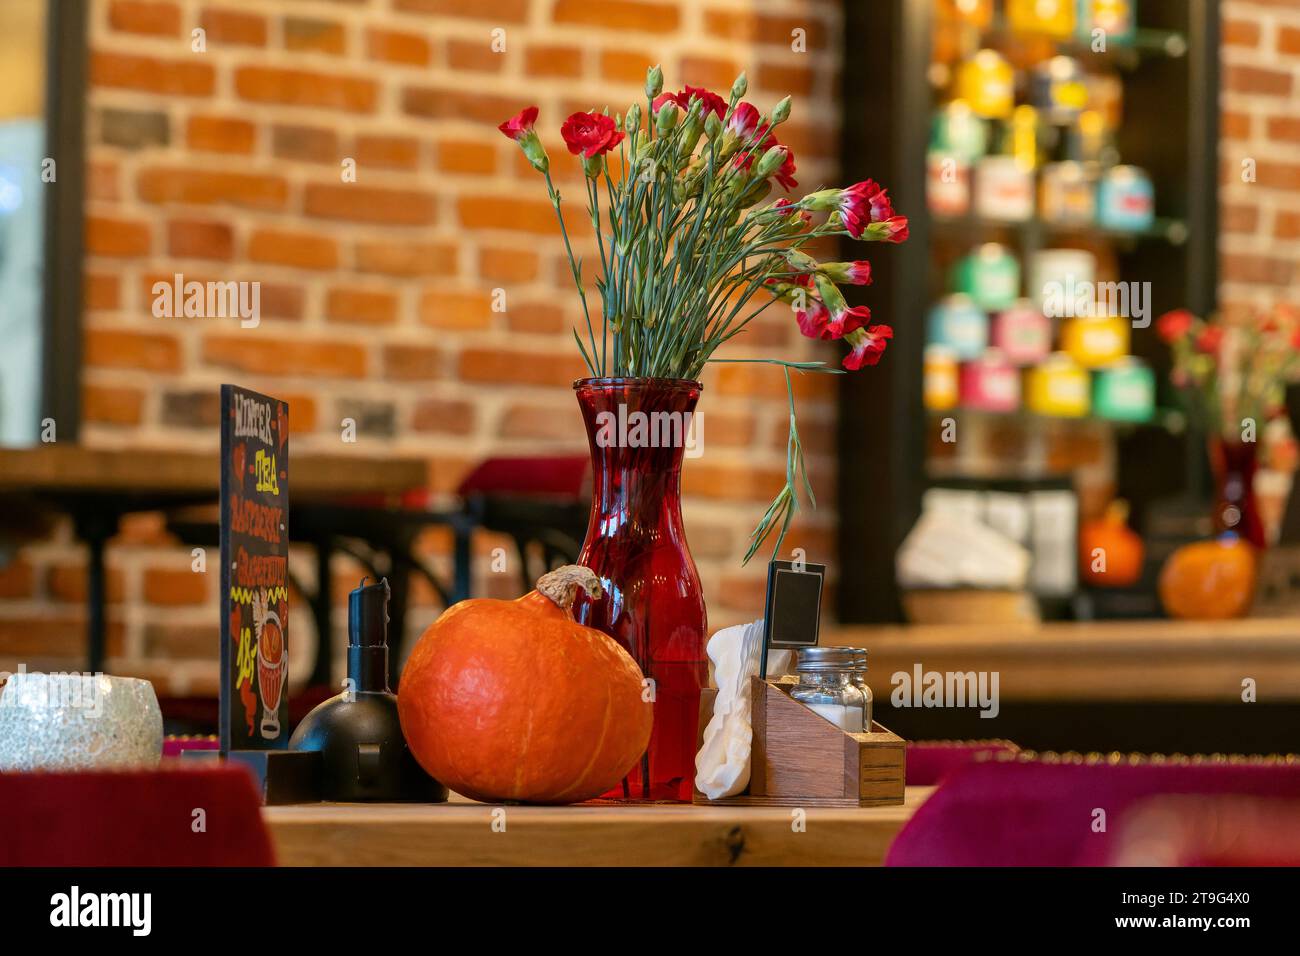 Interni rustici del ristorante con decorazioni autunnali con luce ambiente, pareti in mattoni rossi e tavolo in legno, eleganti e caldi arredi tranquilli Foto Stock